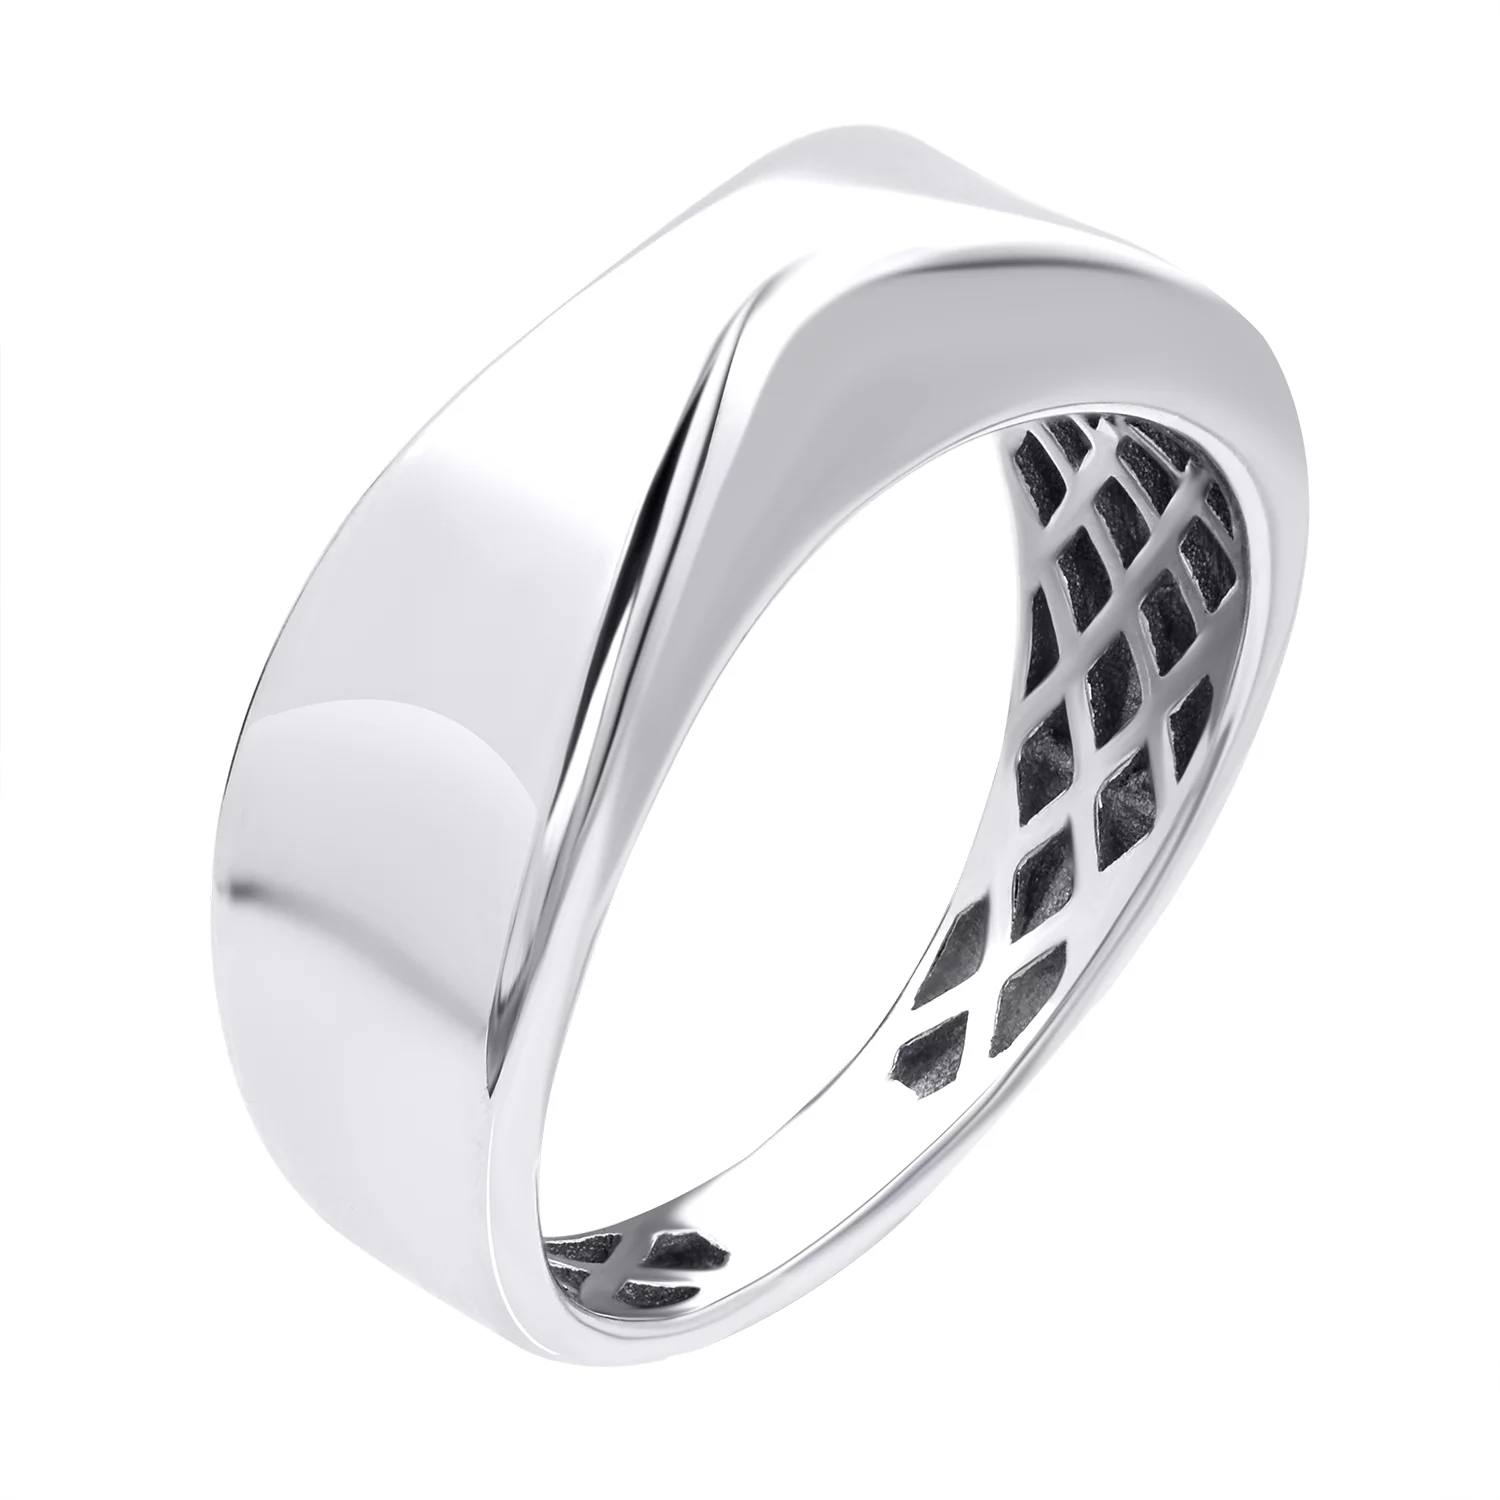 Кольцо серебряное с платиновым покрытием. Артикул 7501/500778-Пл: цена, отзывы, фото – купить в интернет-магазине AURUM